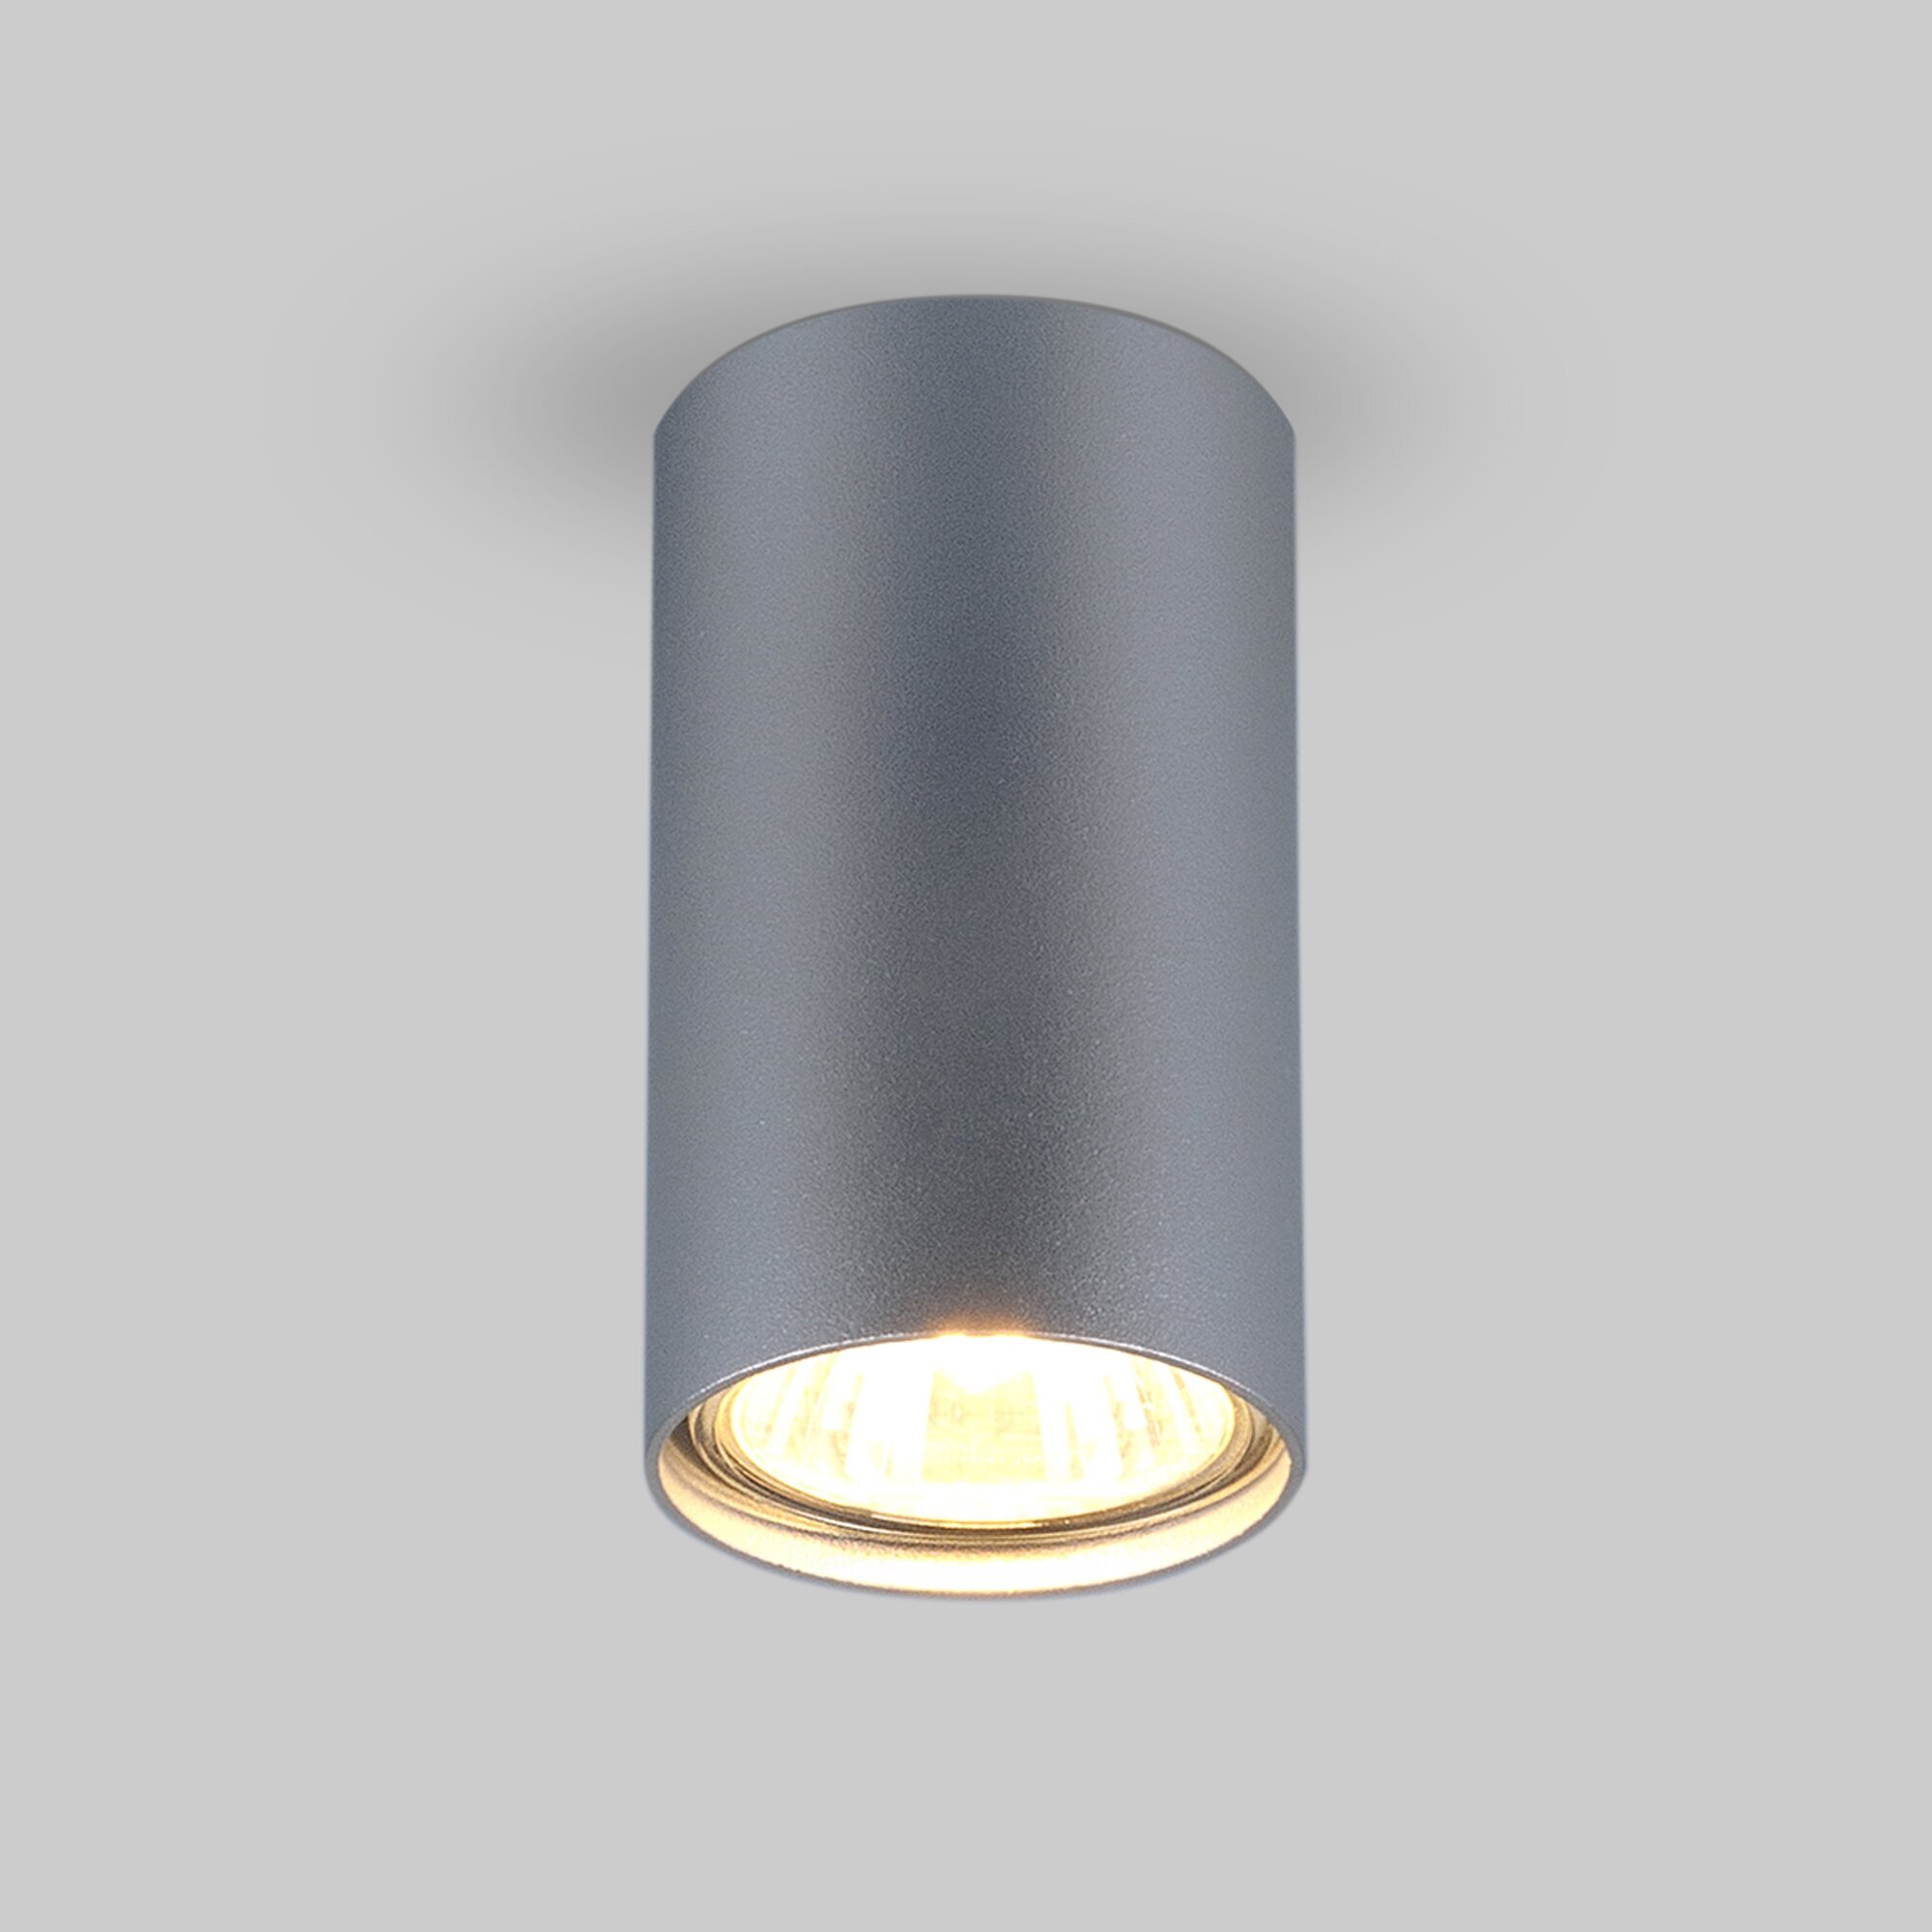 Спот / Накладной потолочный светильник Elektrostandard 1081 GU10 SL серебро (5257)